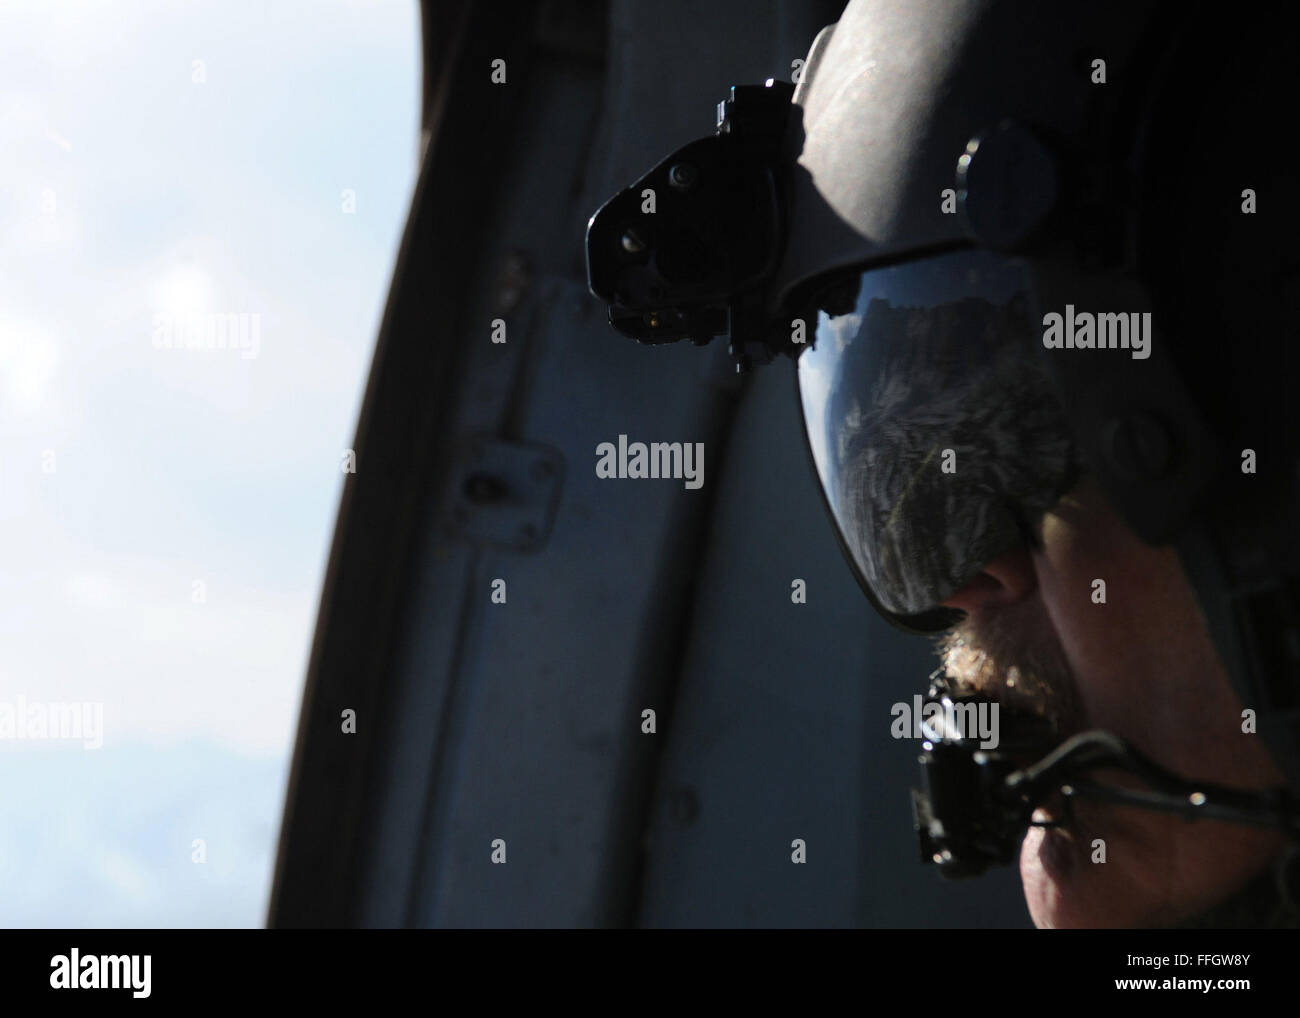 Senior Master Sgt. Todd Peplow, eine Antenne Schütze mit der 438th Air Expeditionary Advisory Squadron, bietet Support für Gunner auf einer afghanischen Luftwaffe MI-17 während eines Fluges über Afghanistan. Peplow ist derzeit eingesetzt, um AAF Flugingenieure am internationalen Flughafen von Kabul beratenden auszubilden. Stockfoto